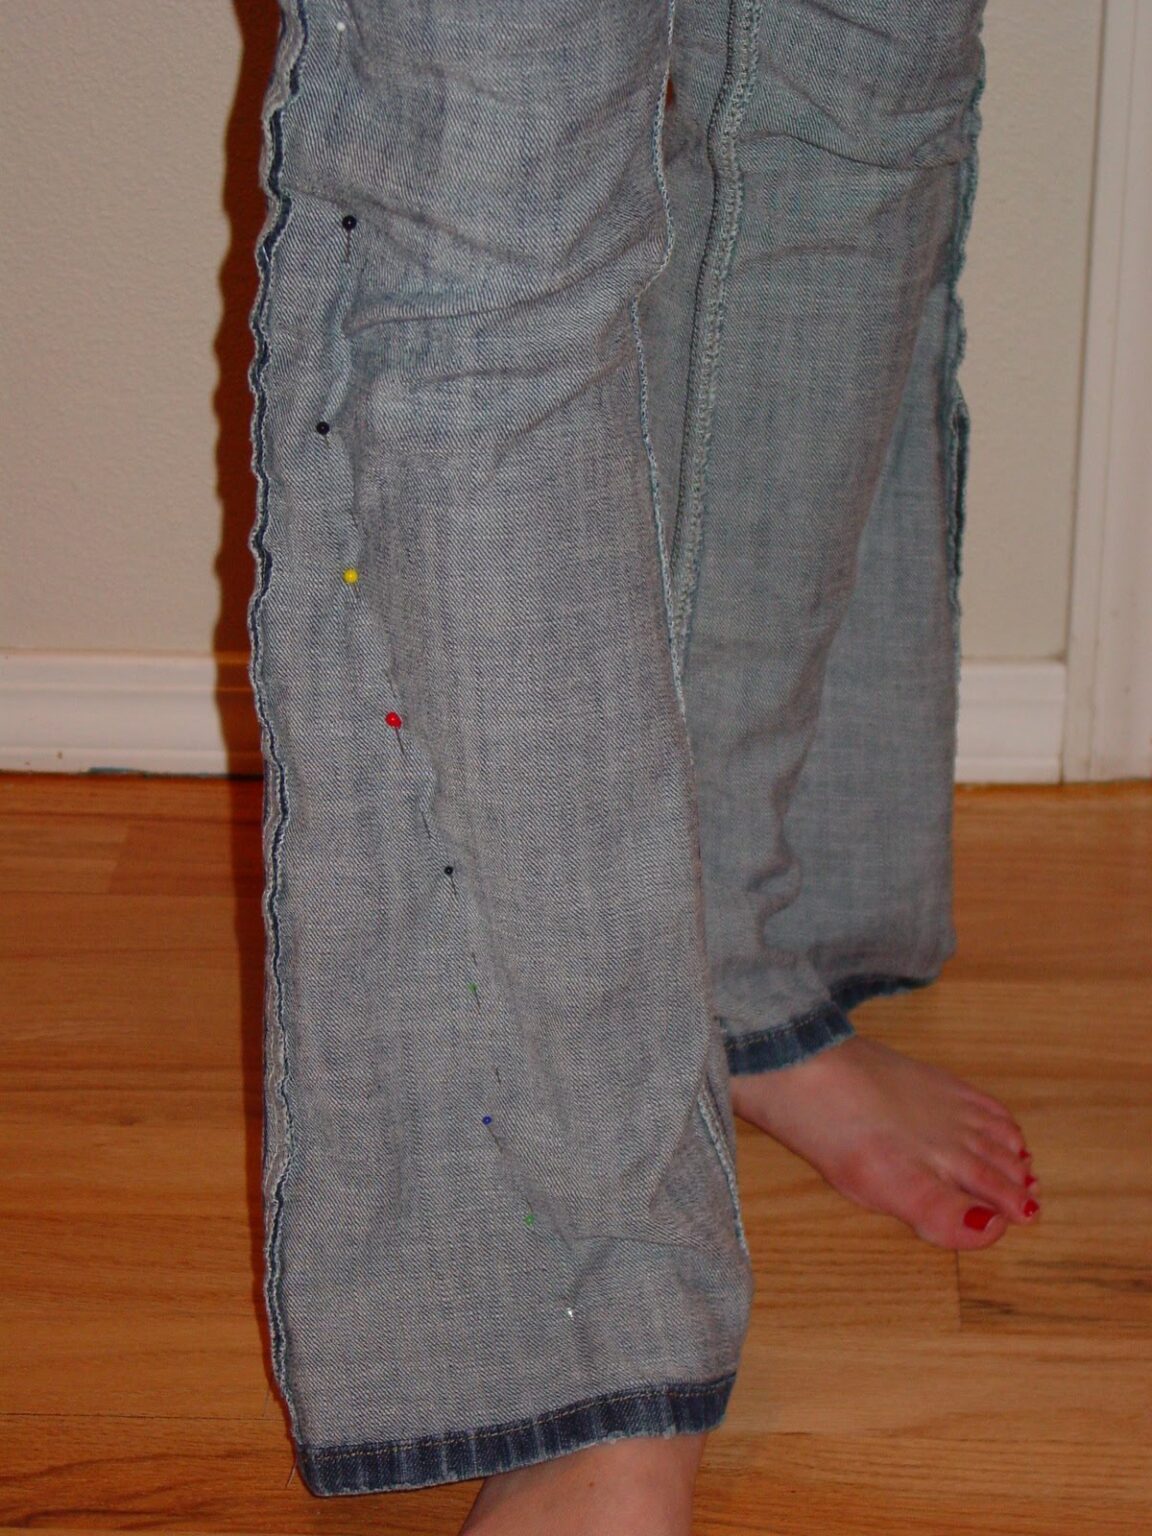 Как ушить брюки по бокам в домашних условиях пошаговая инструкция с фото пошагово для начинающих